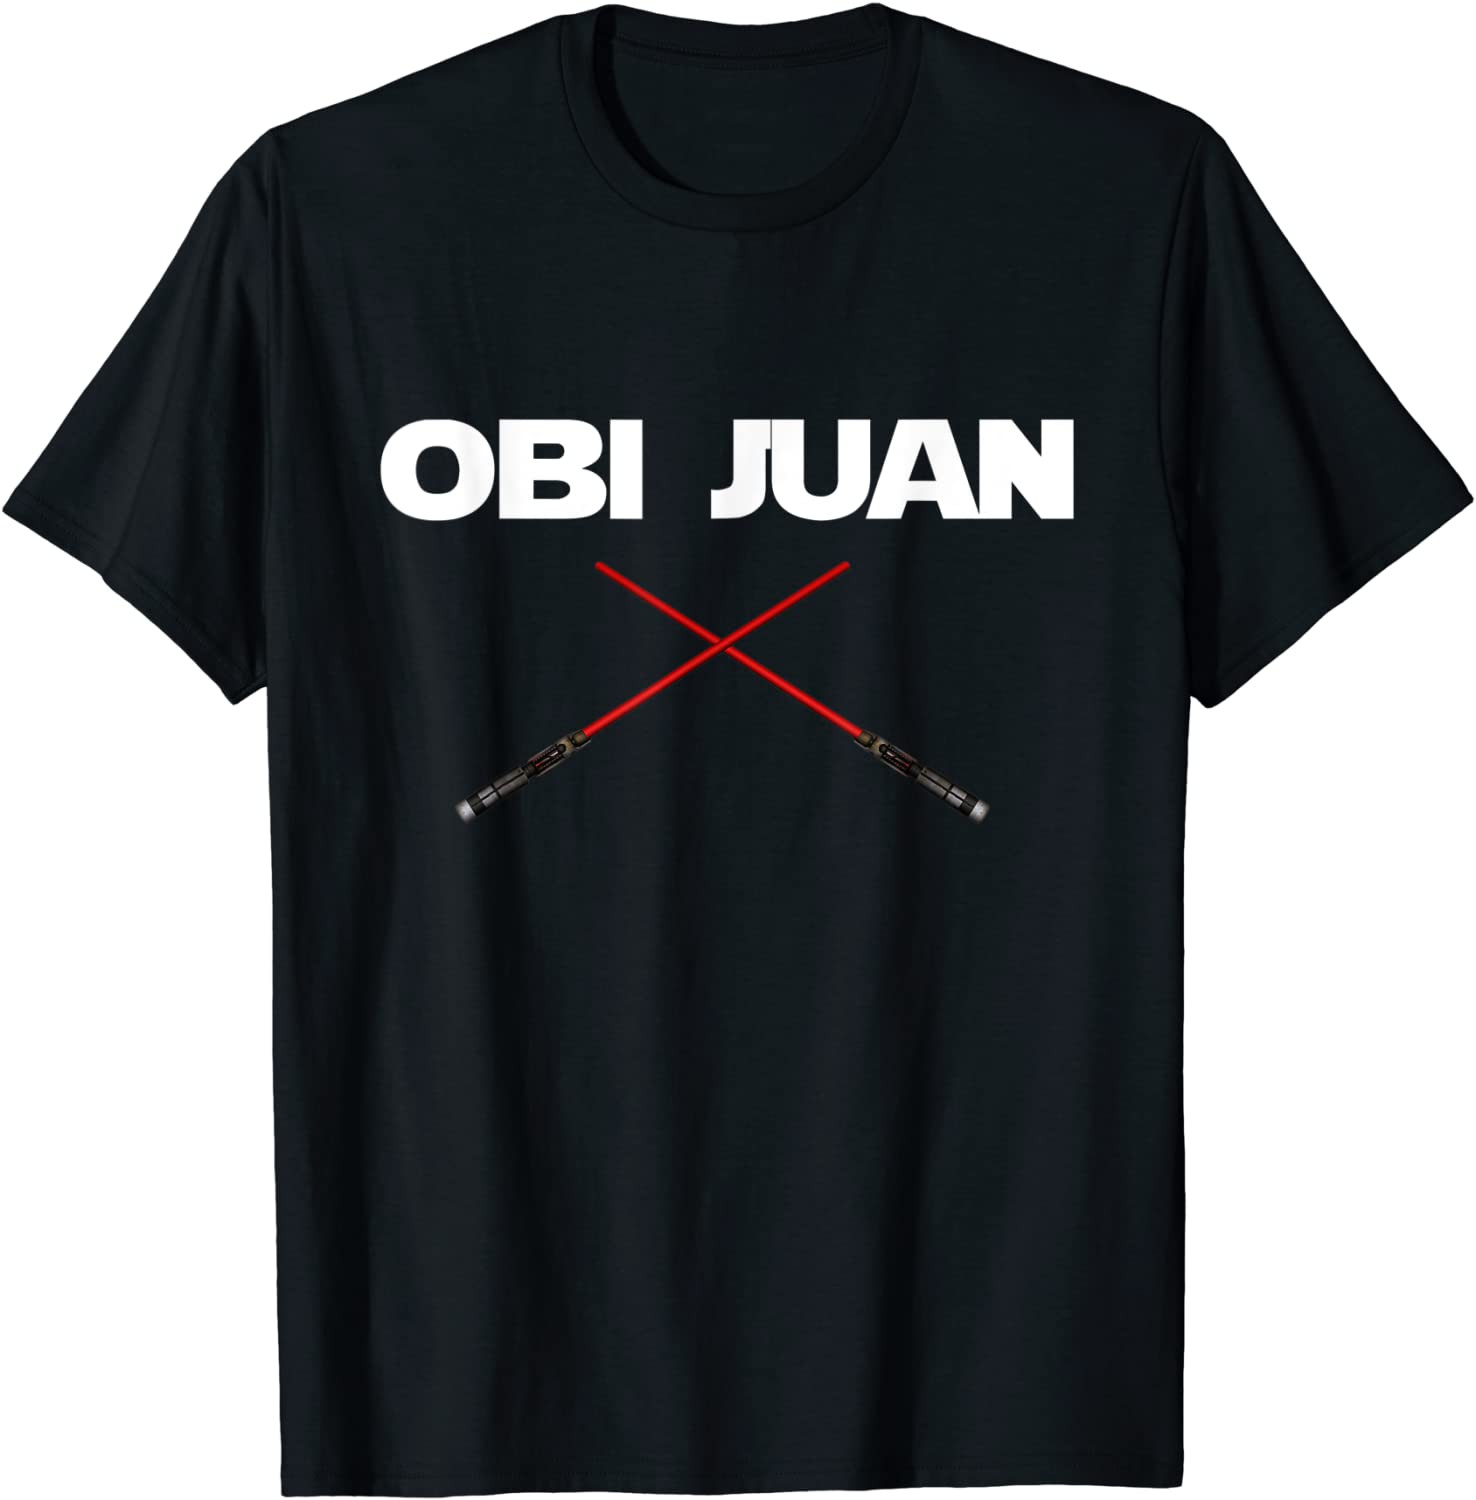 Obi Juan - Nerd Geek Movie Lover T-Shirt